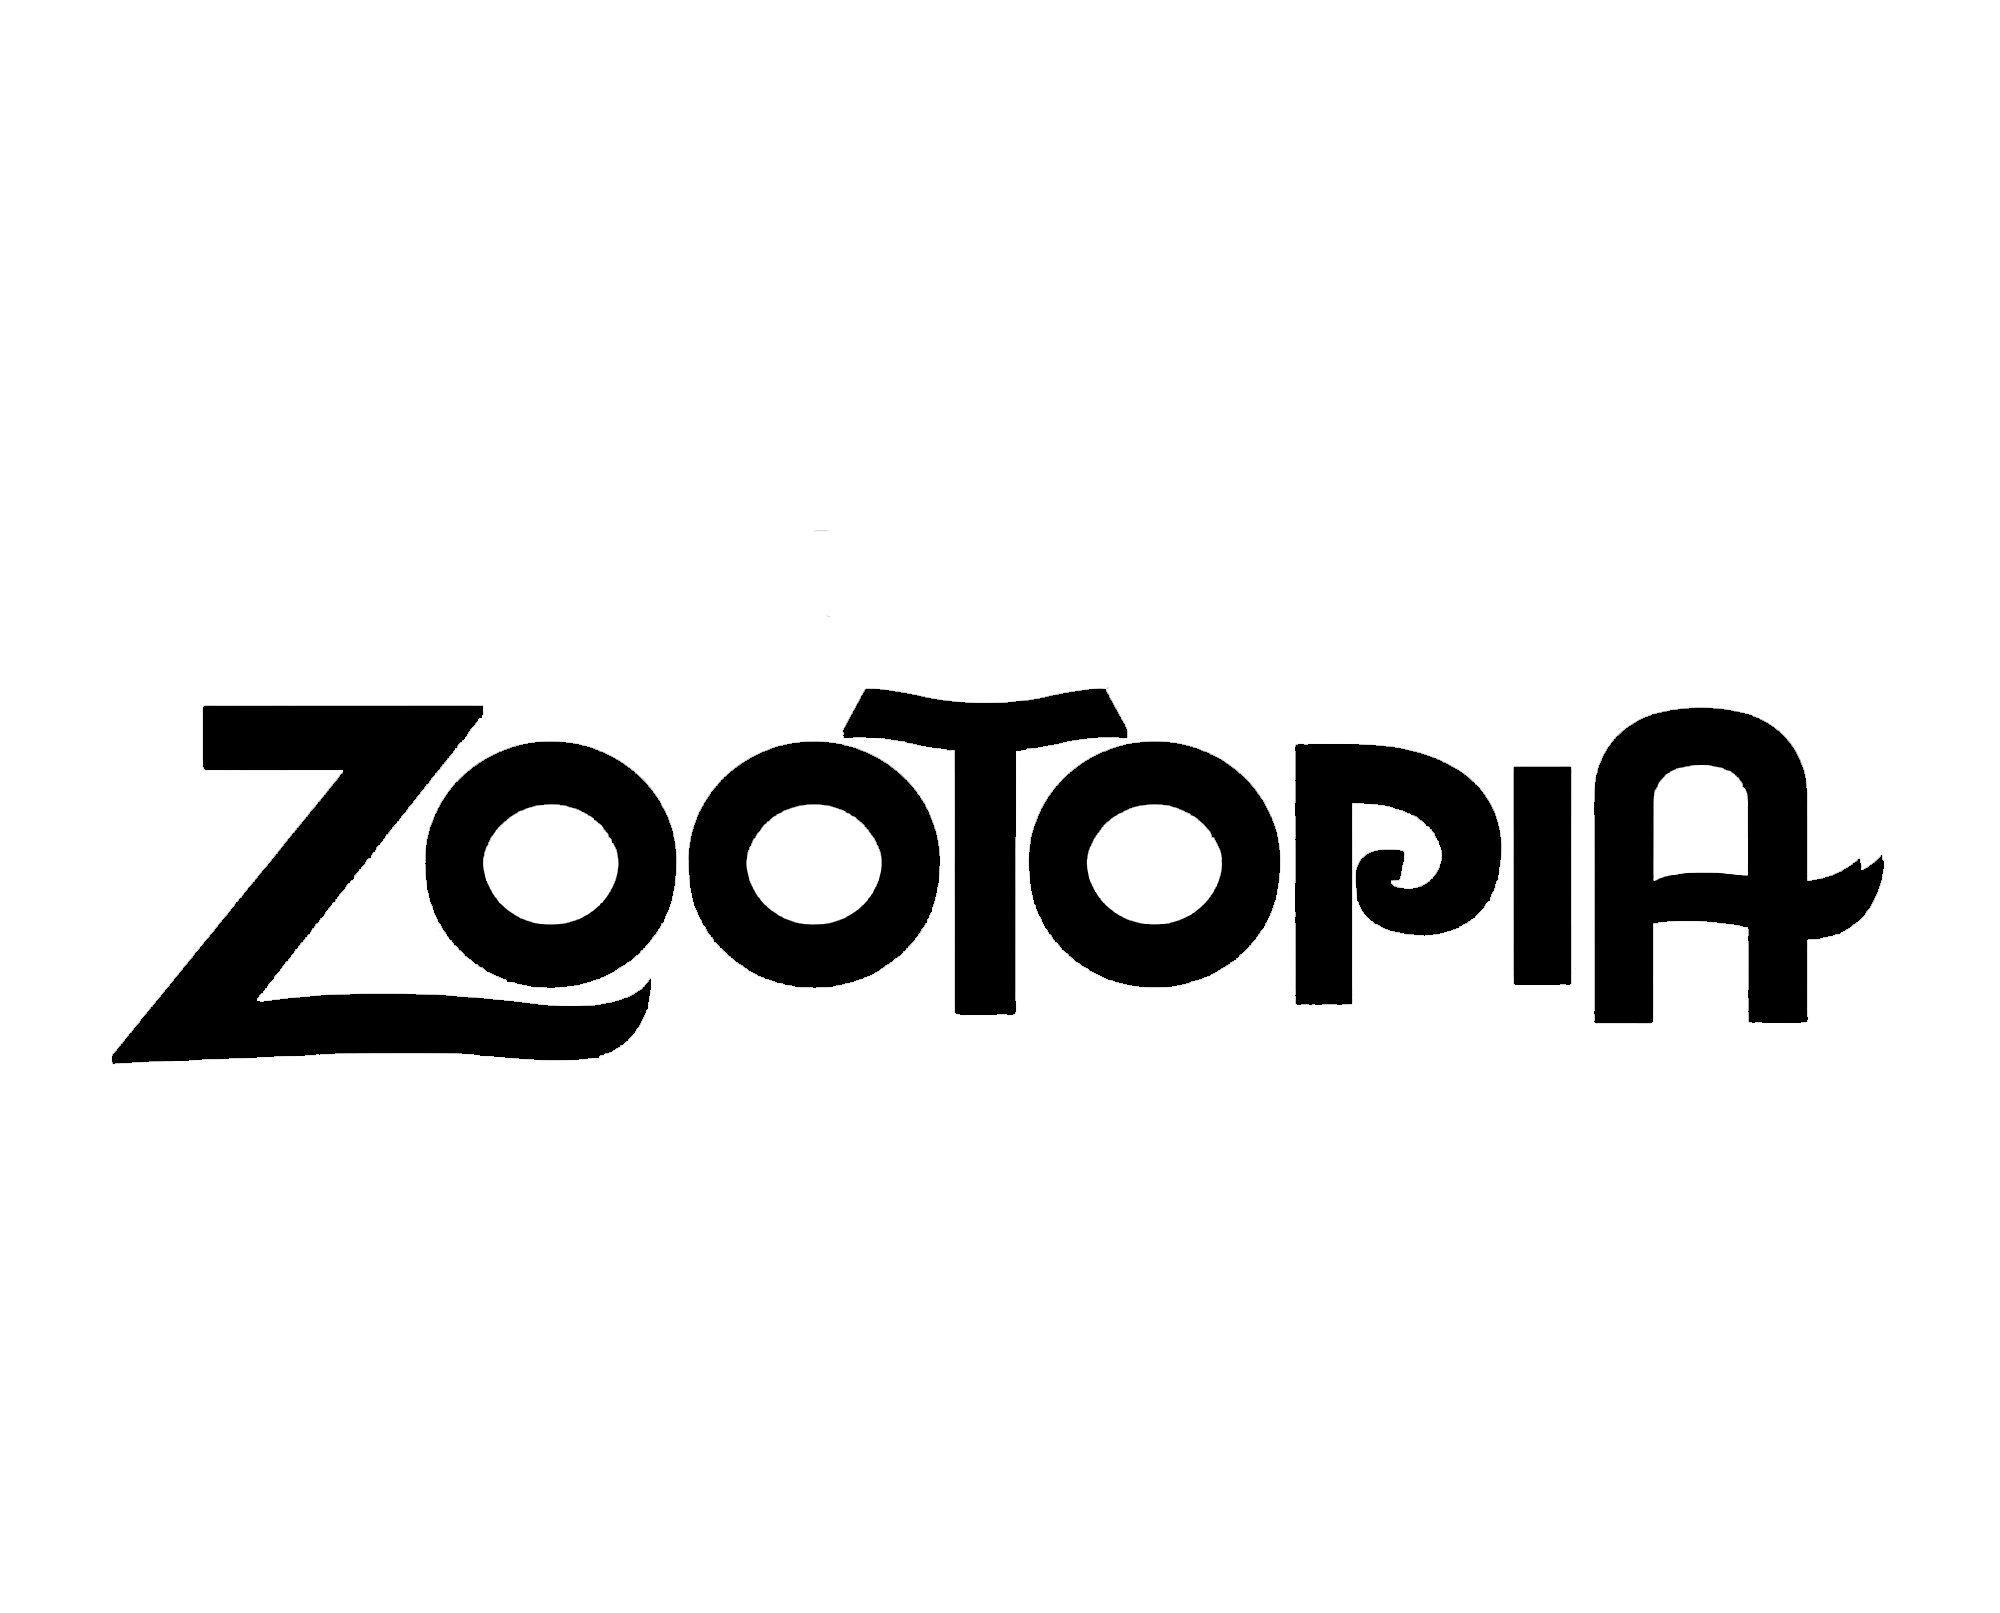 Zootopia Logo - File:ZOOTOPIA (logo).png - Wikimedia Commons